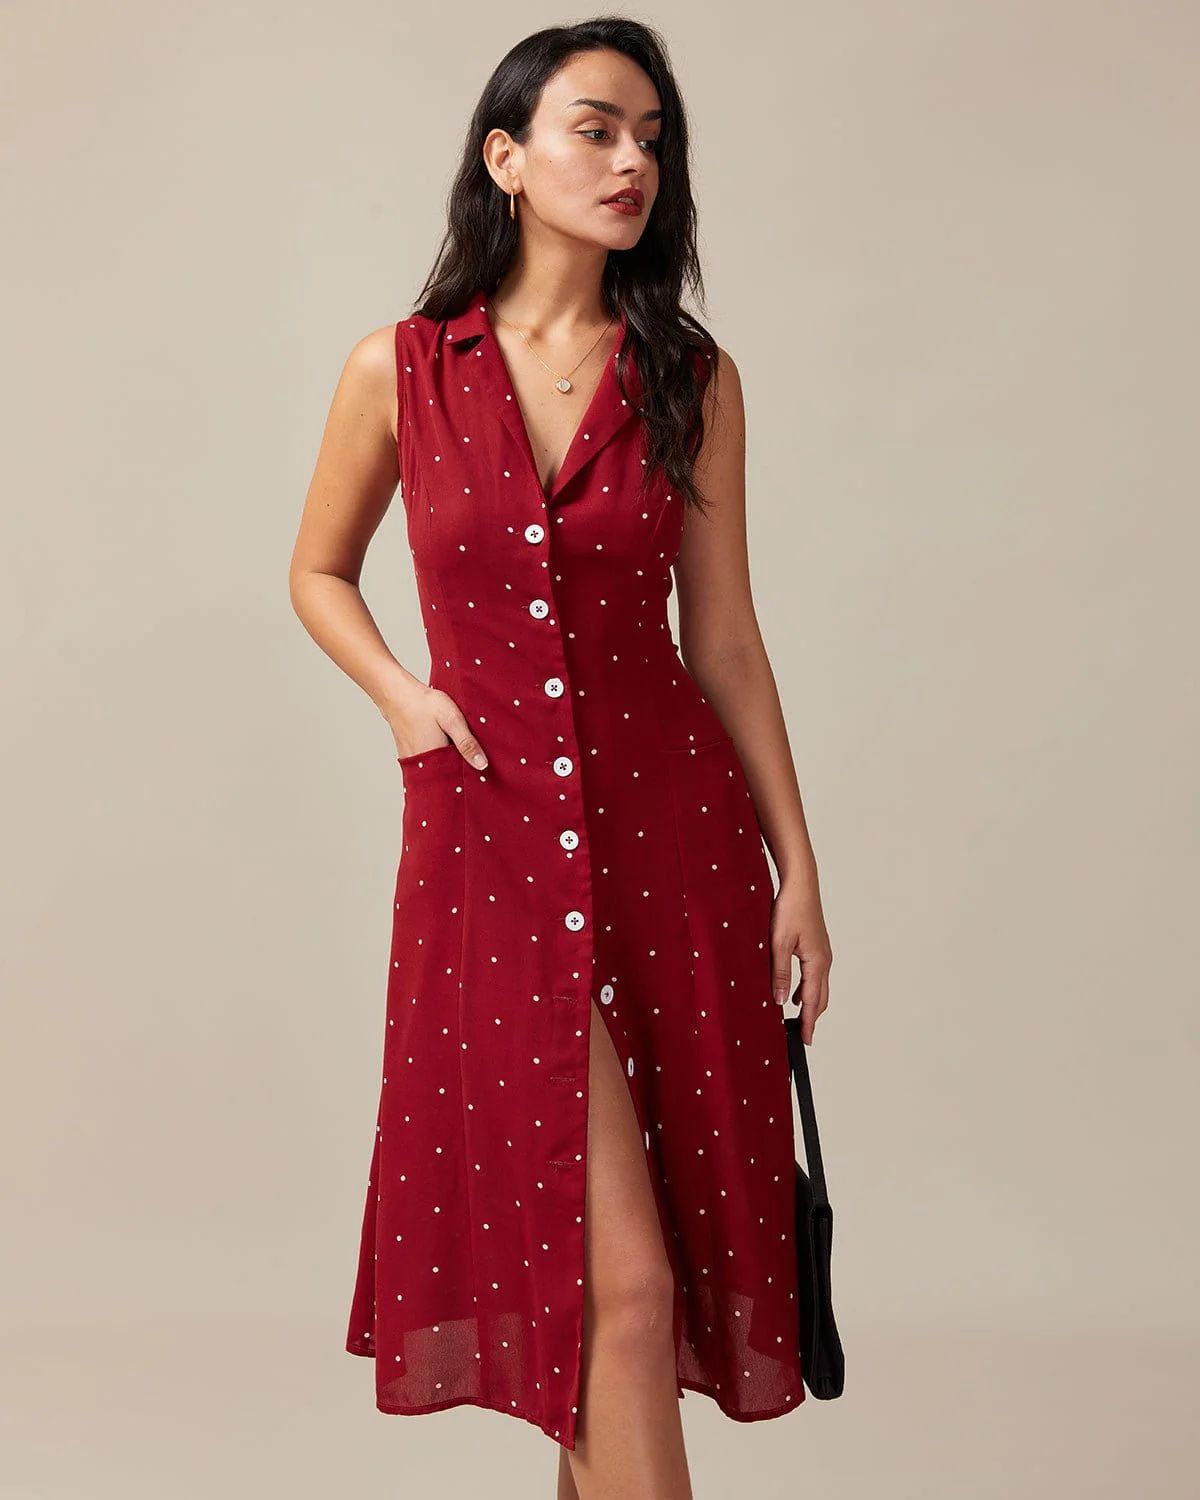 The Red V Neck Polka Dot Tie Back Midi Dress - Women's Red Polka Dot Button Up Print Midi Dress -... | rihoas.com